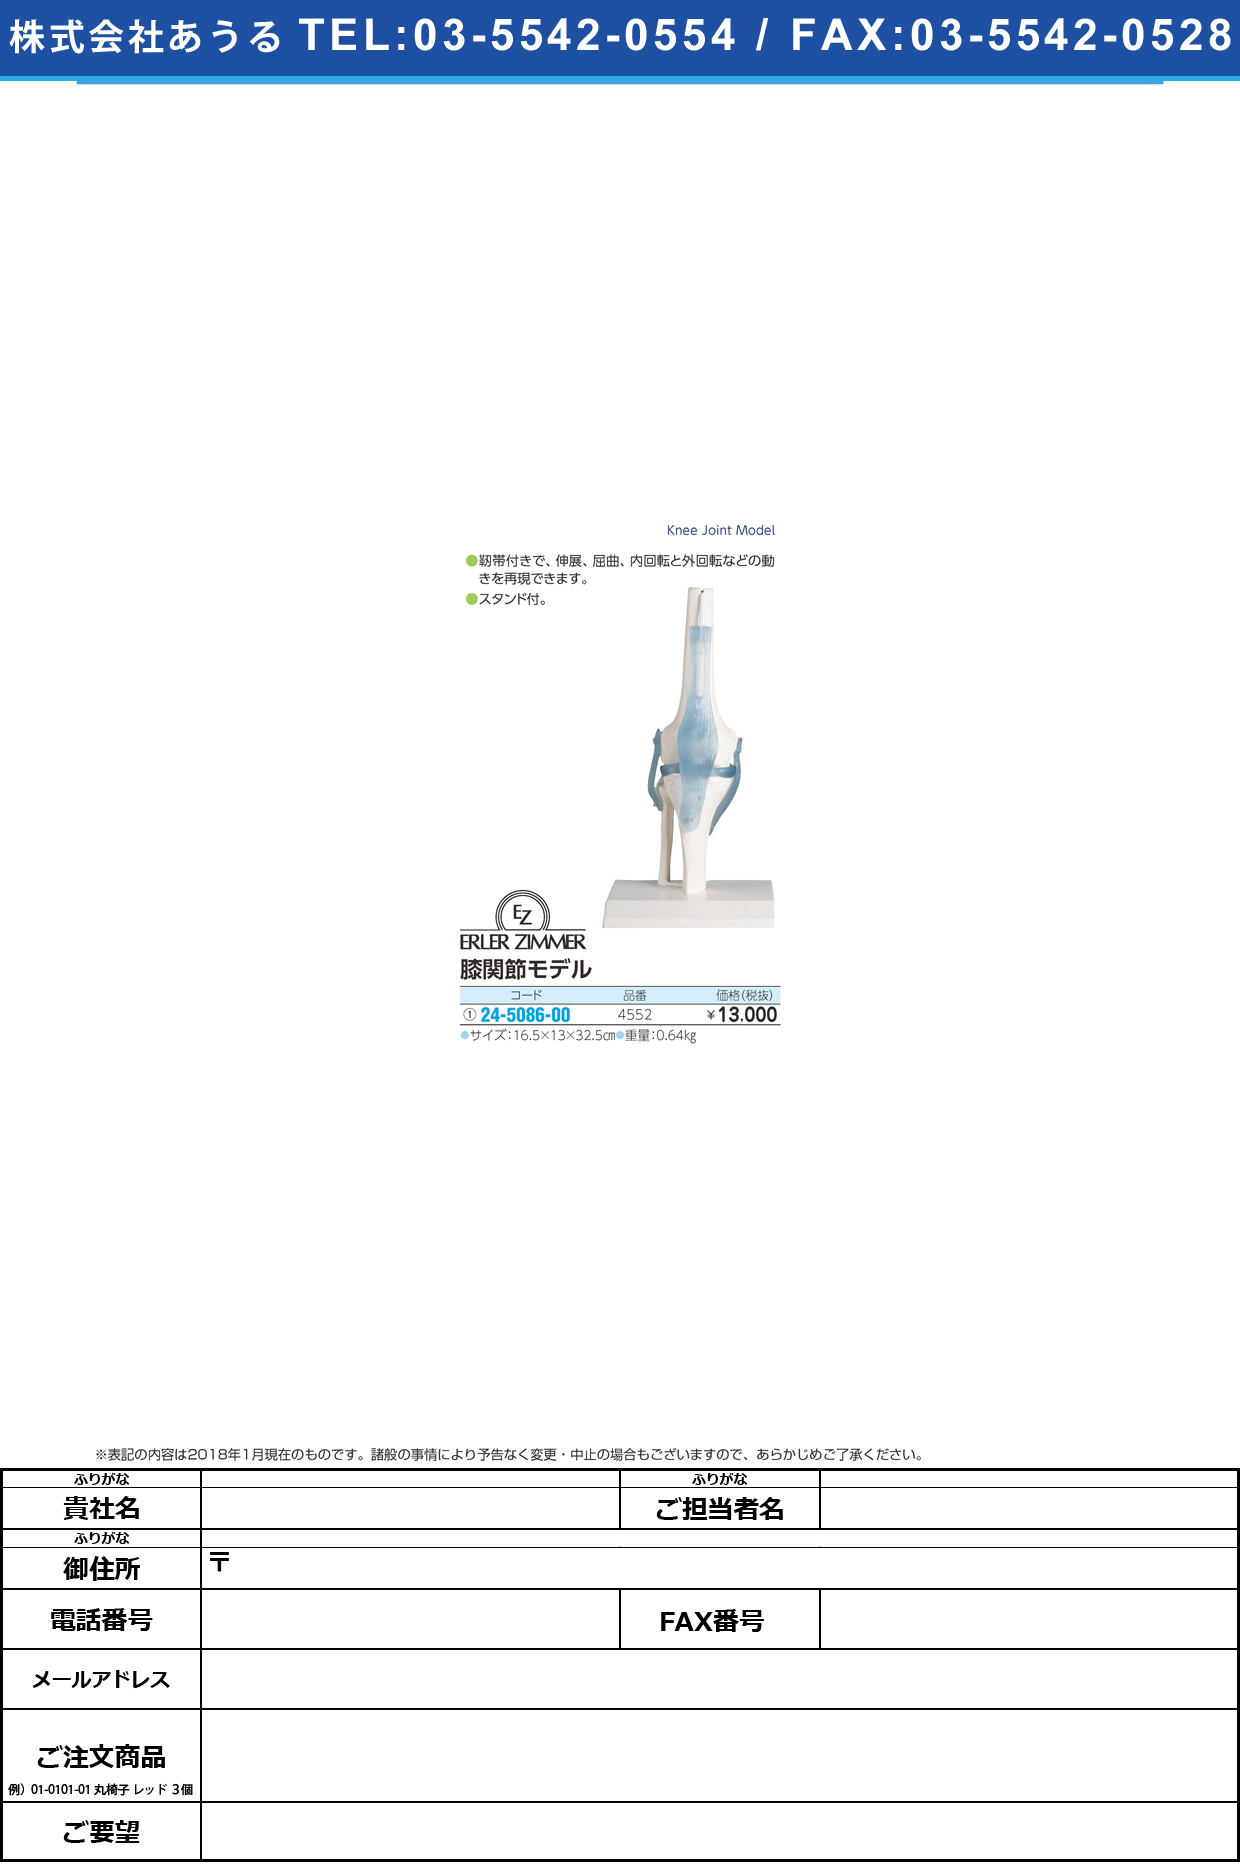 (24-5086-00)膝関節モデル 4552 ﾋｻﾞｶﾝｾﾂﾓﾃﾞﾙ(エルラージーマー社)【1個単位】【2019年カタログ商品】